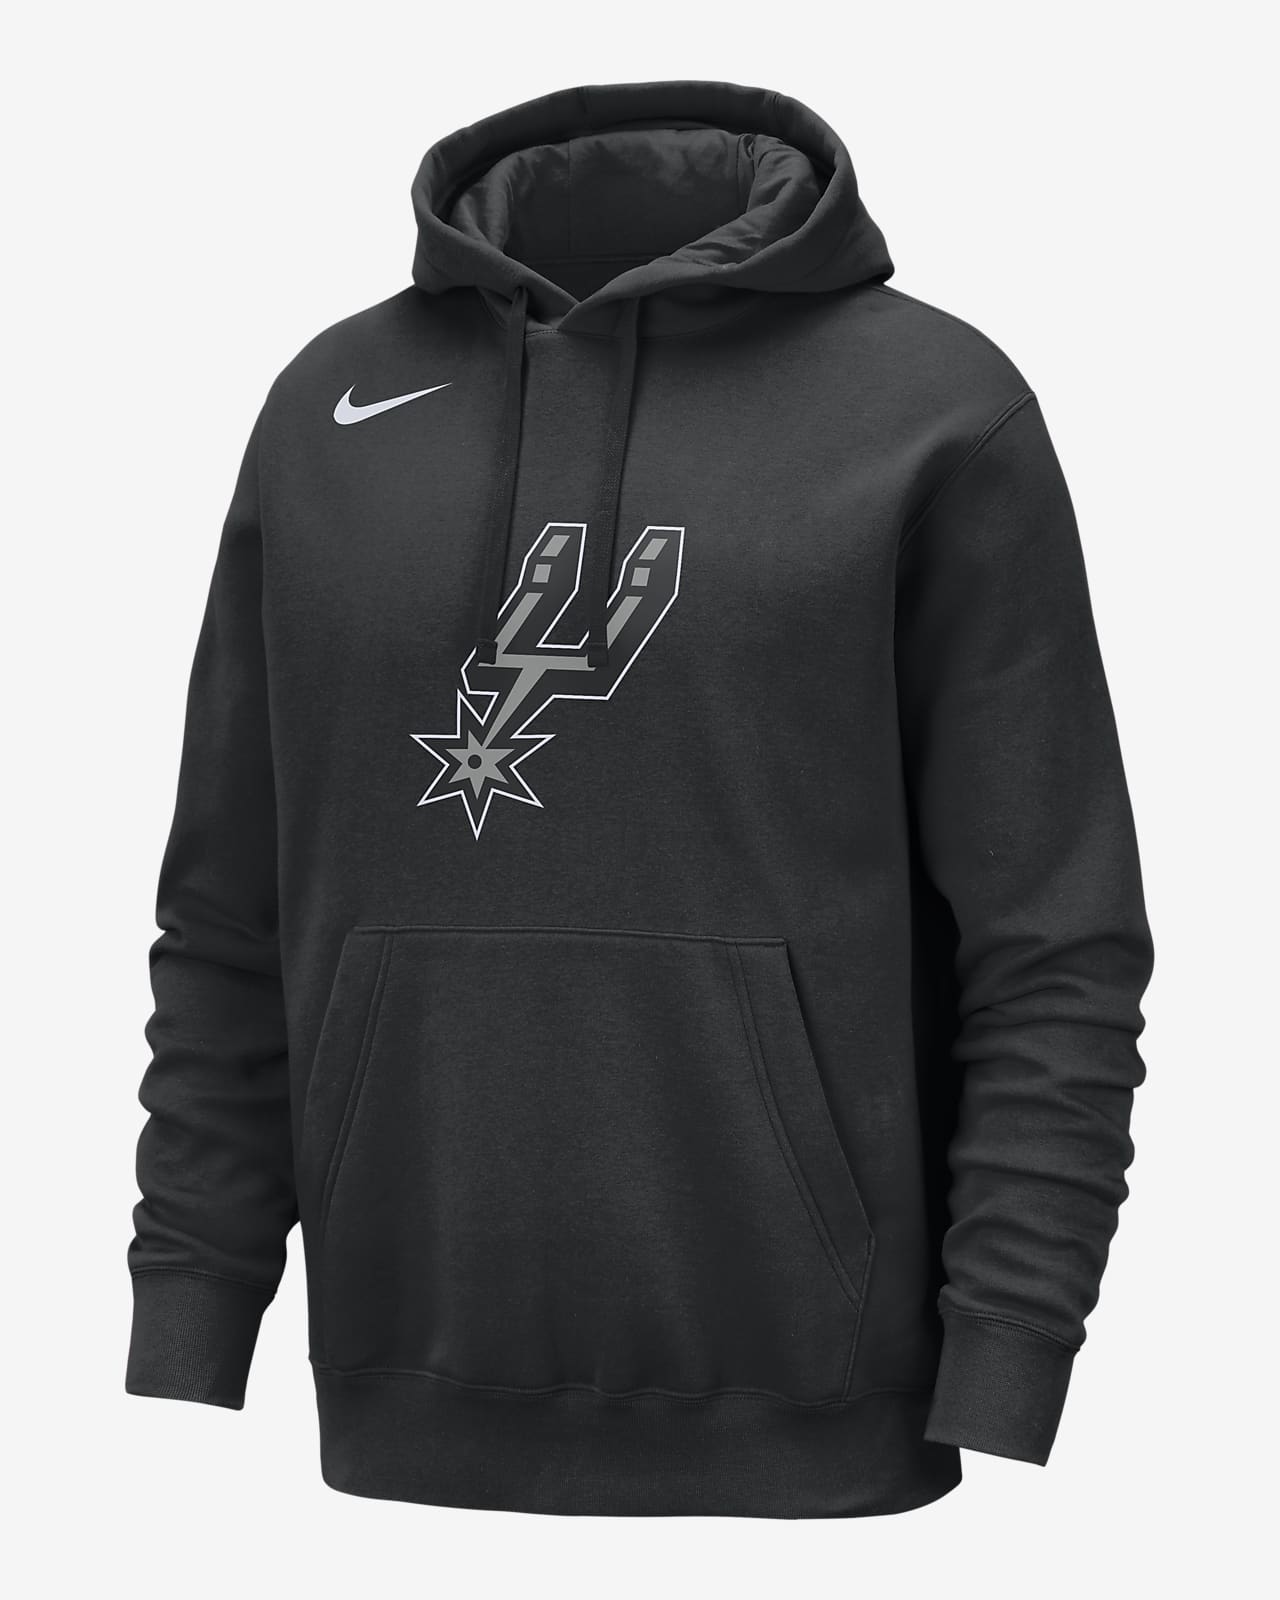 San Antonio Spurs Club Men's Nike NBA Pullover Hoodie